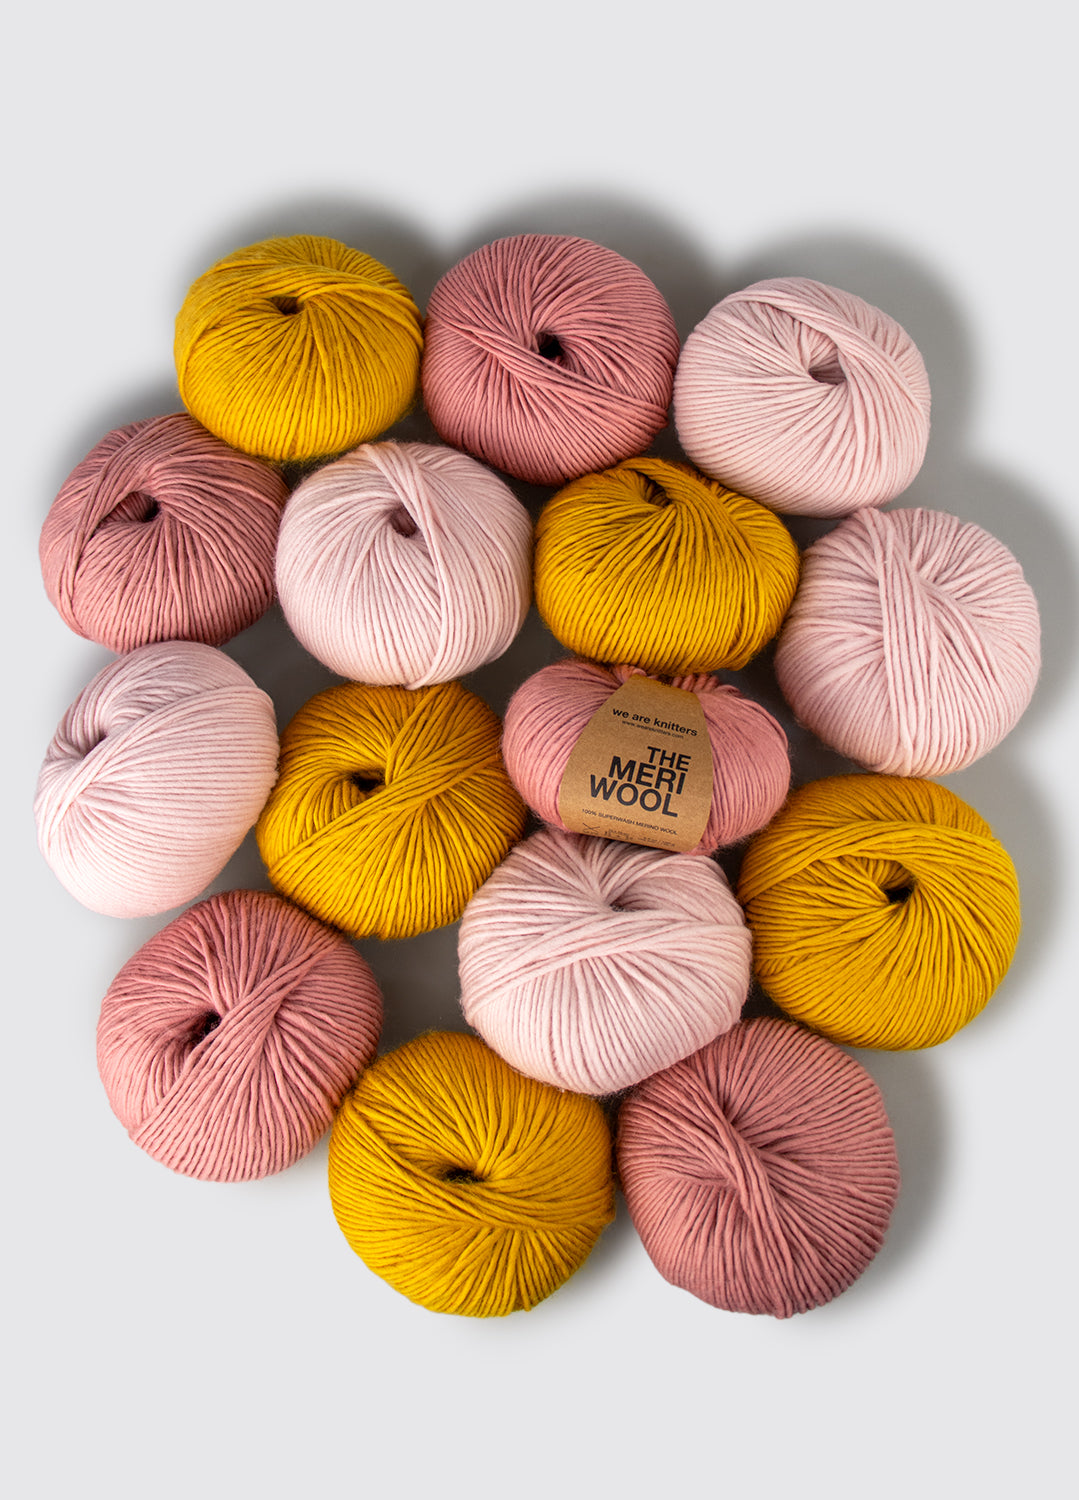 15 Pack of Meriwool Yarn Balls